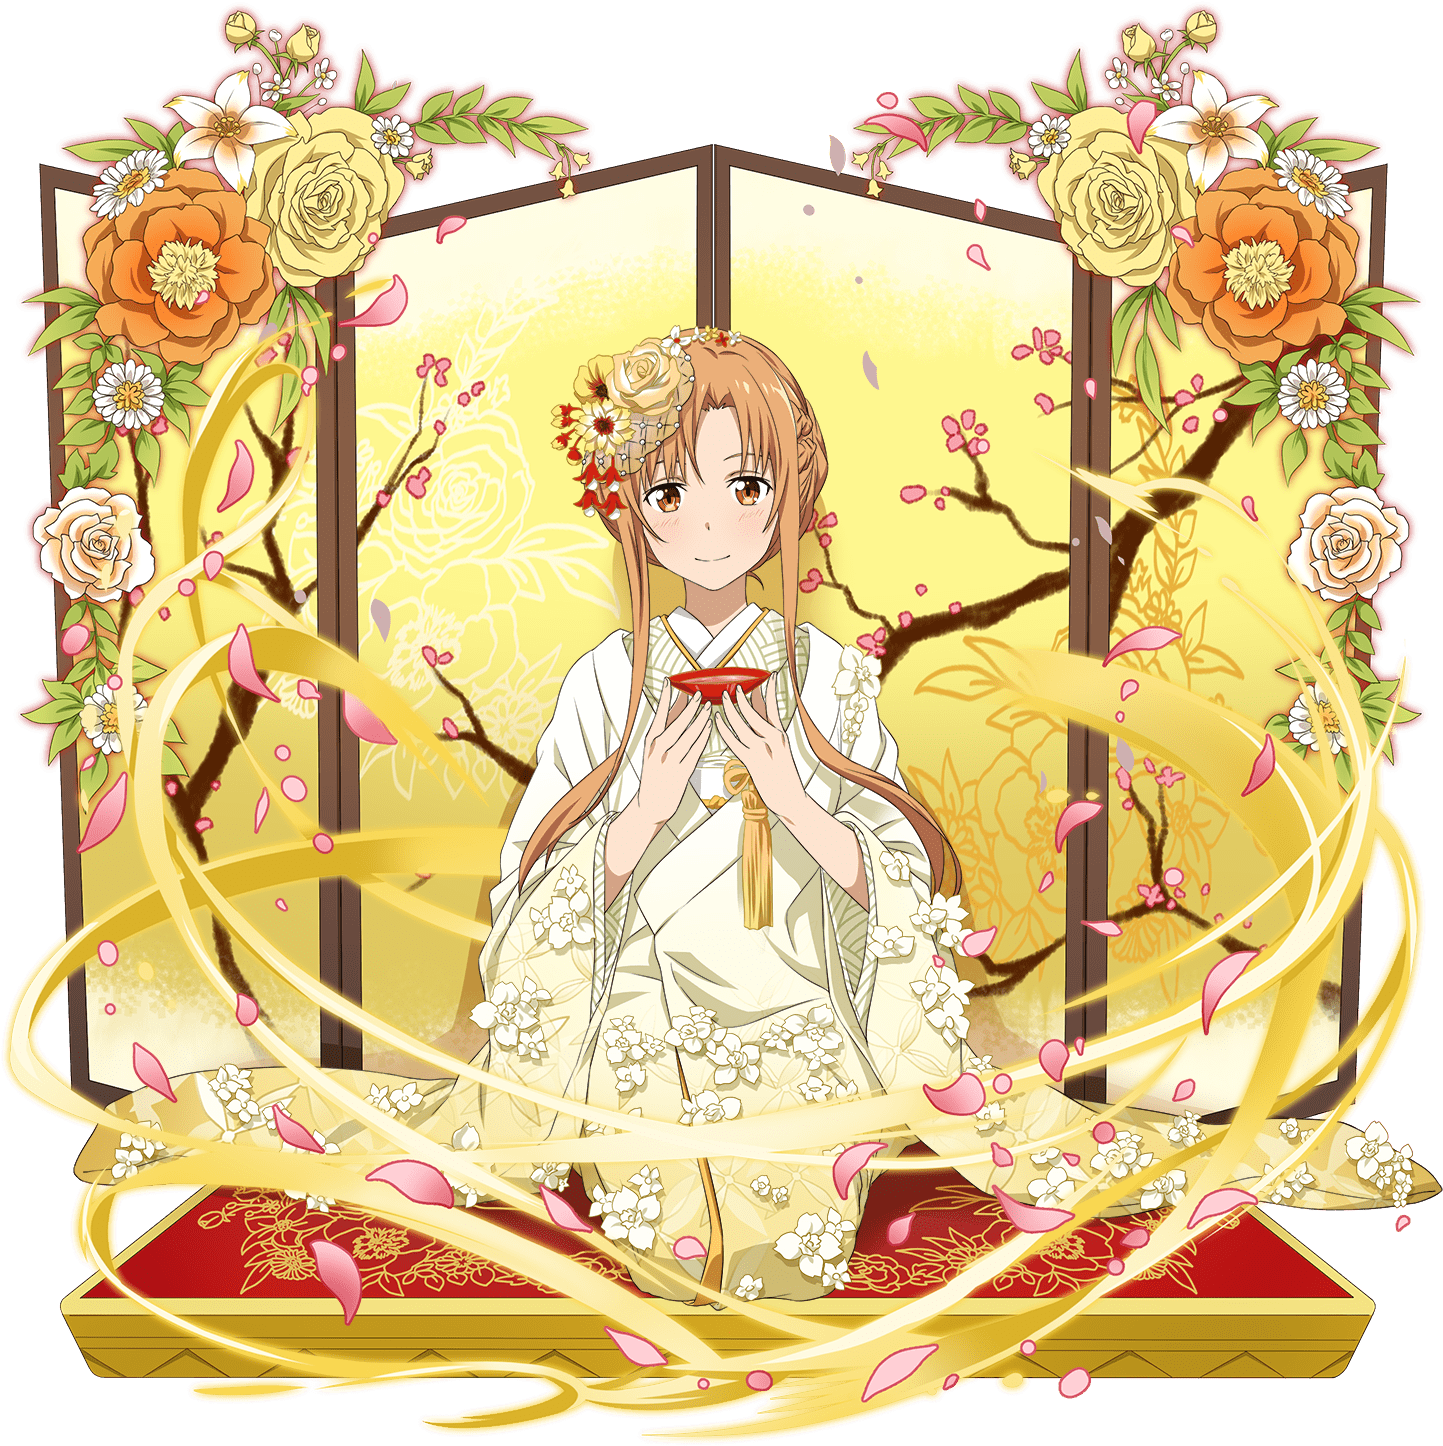 [joyful Wedding] Asuna - Sao Md Wedding Asuna Clipart (1500x1500), Png Download